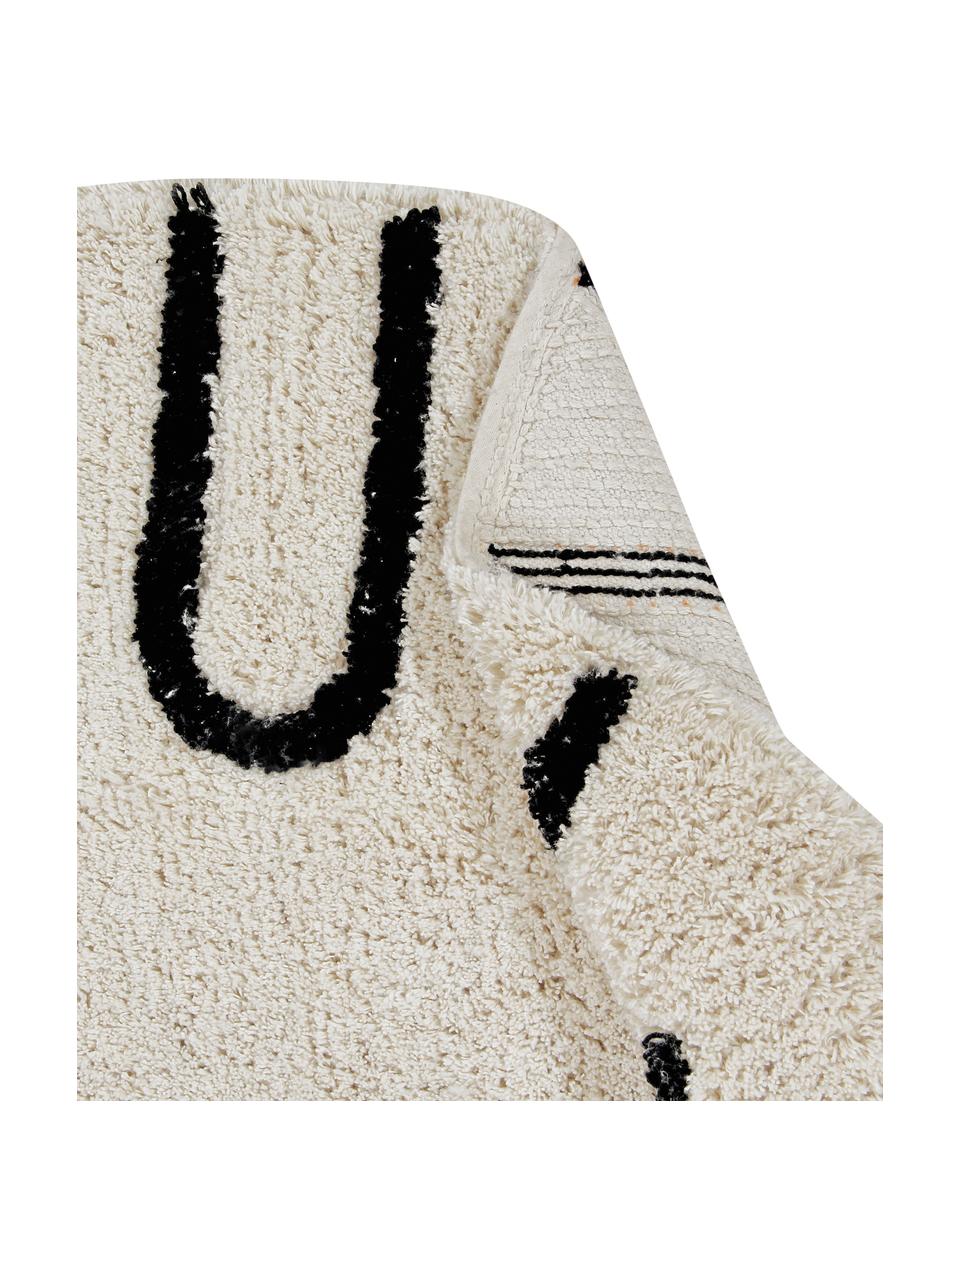 Runder Teppich ABC mit Buchstaben Design, waschbar, Recycelte Baumwolle (80% Baumwolle, 20% andere Fasern), Beige & Schwarz, Ø 150 cm (Größe M)